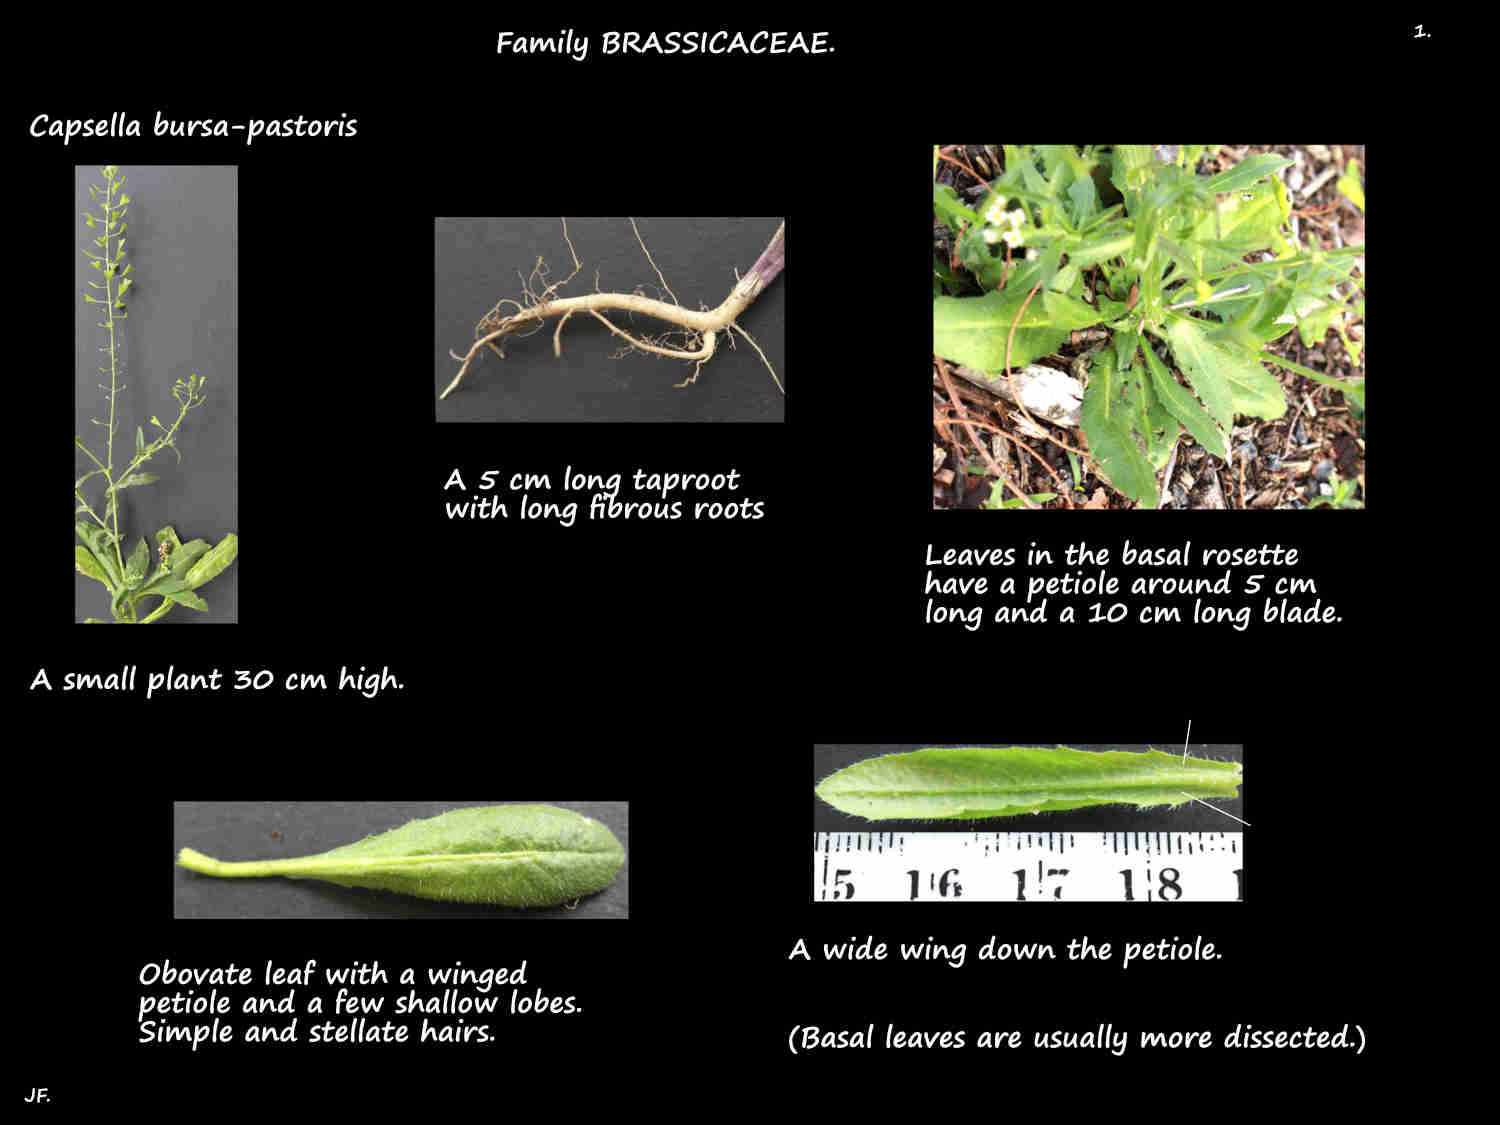 1 Capsella bursa-pastoris plant & taproot